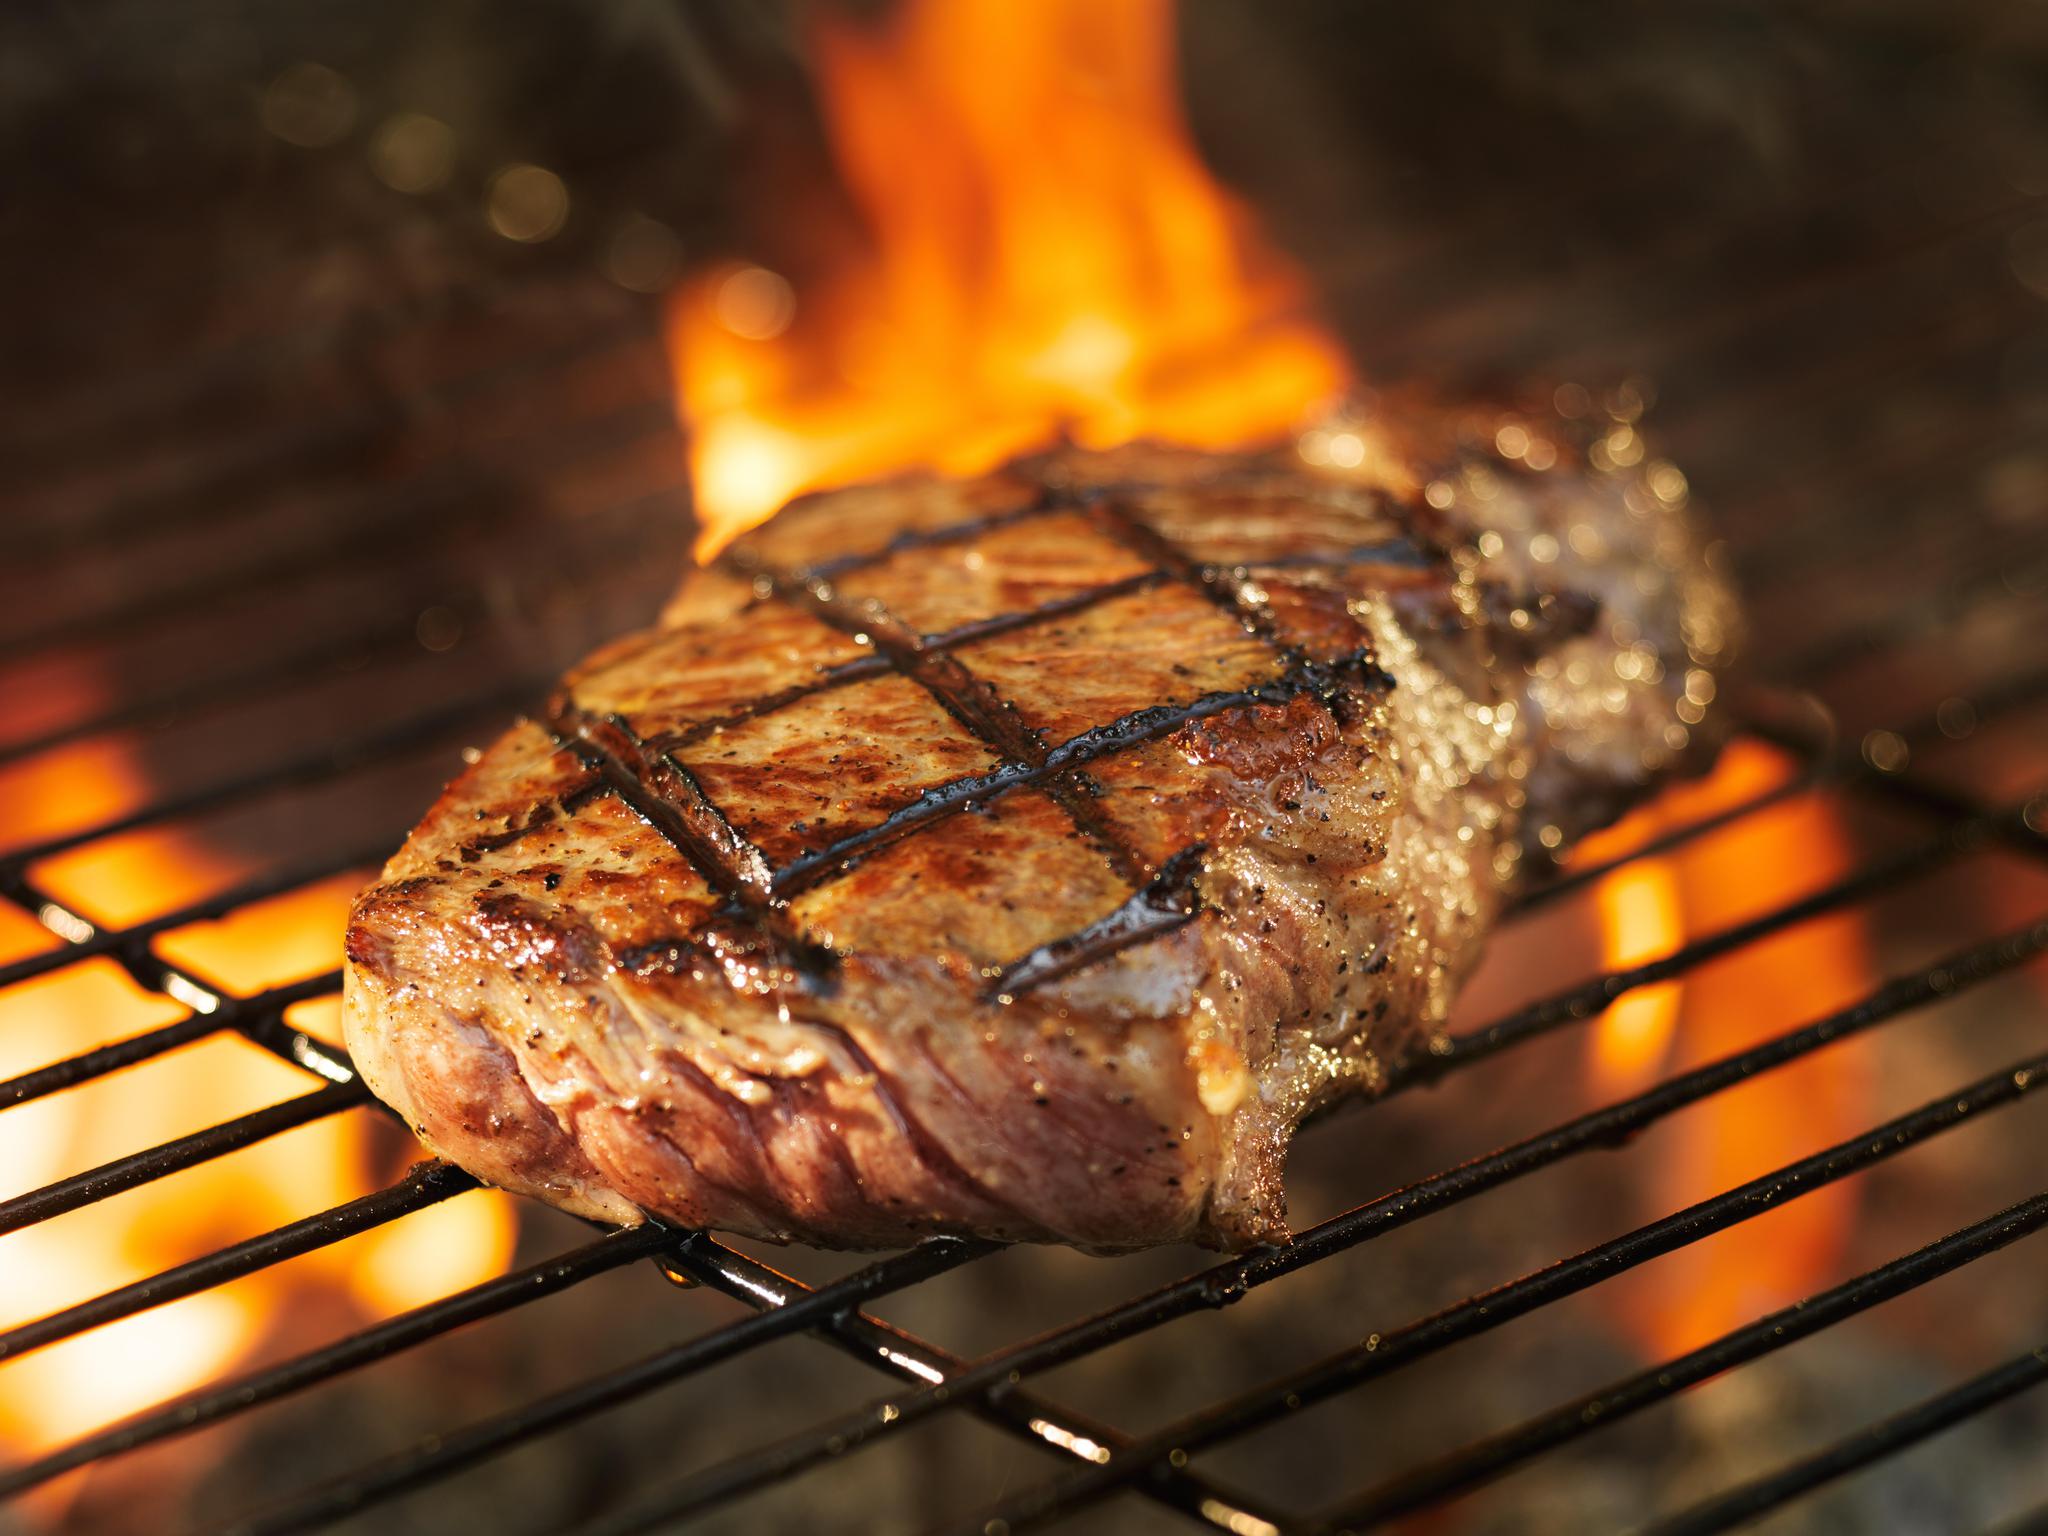 100% Grass Fed Sirloin Steak